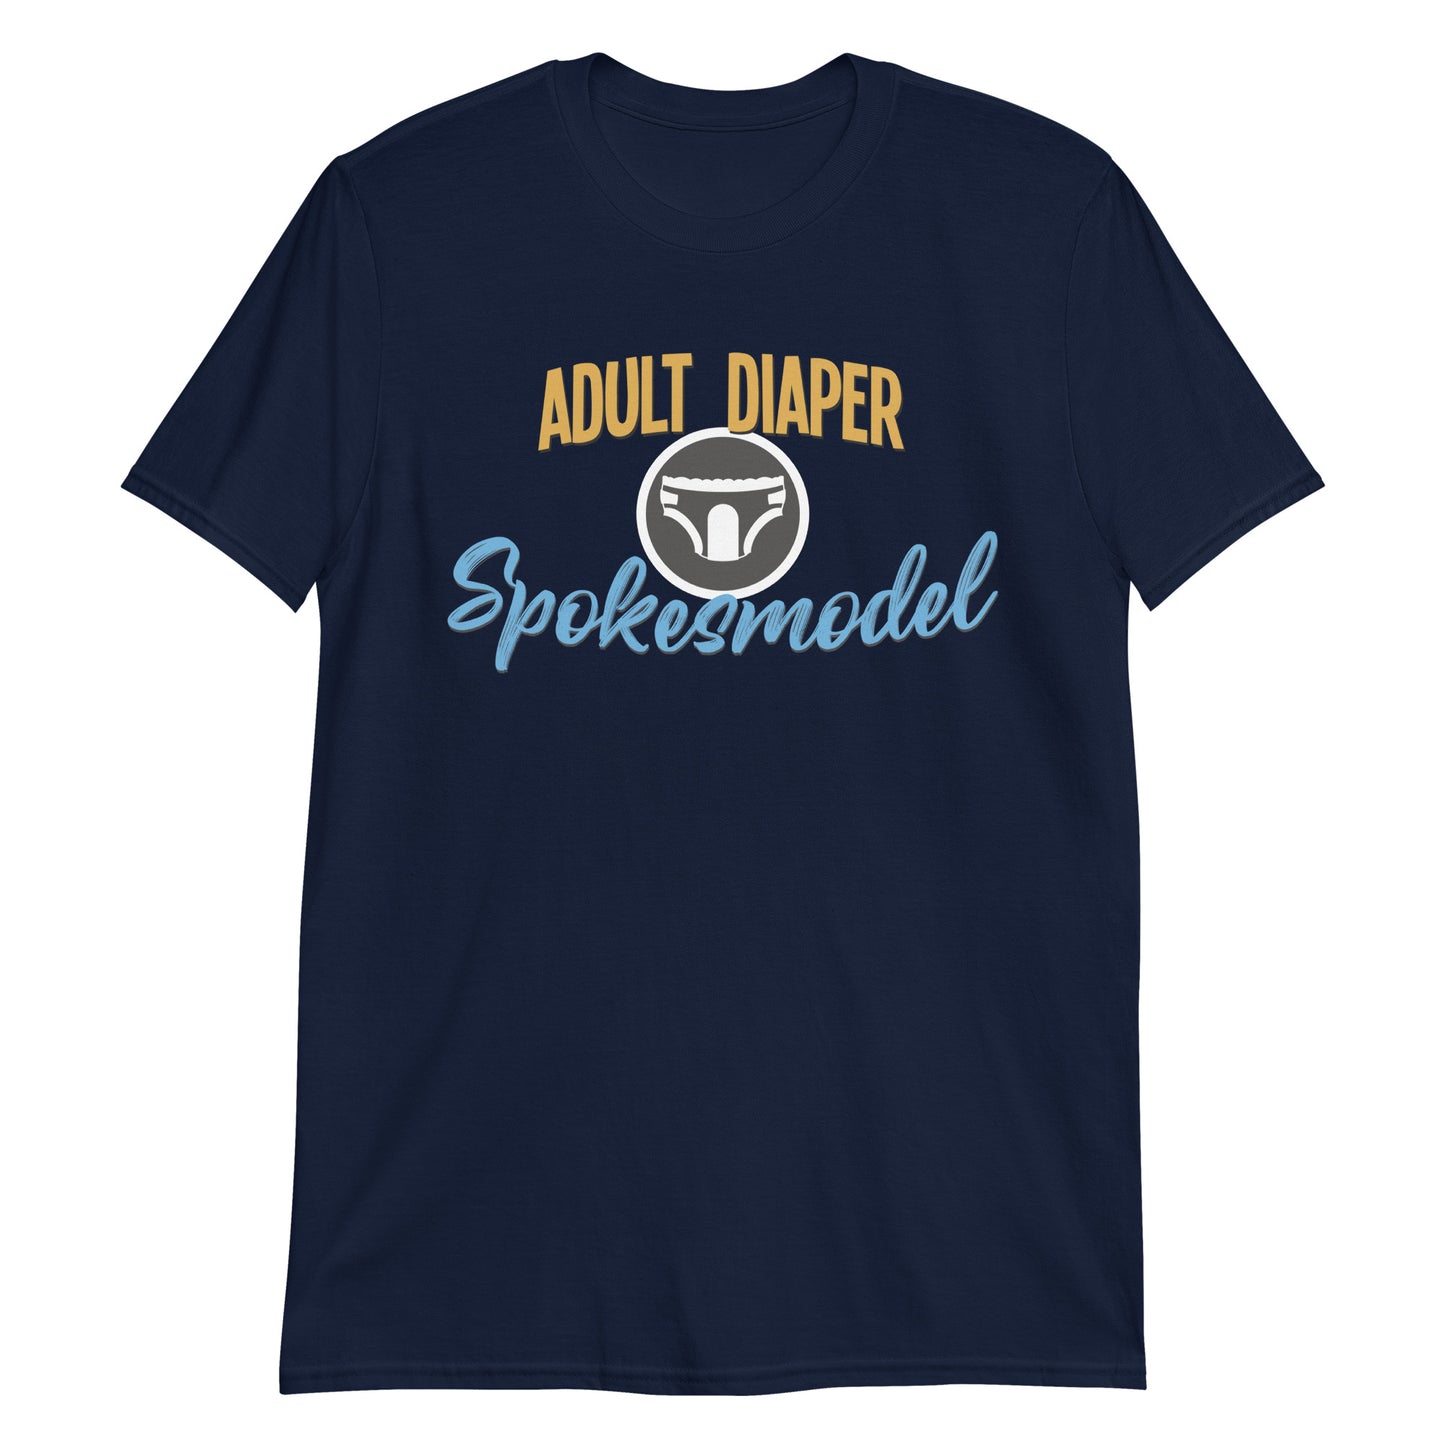 Adult Diaper Spokesmodel 2 T-Shirt